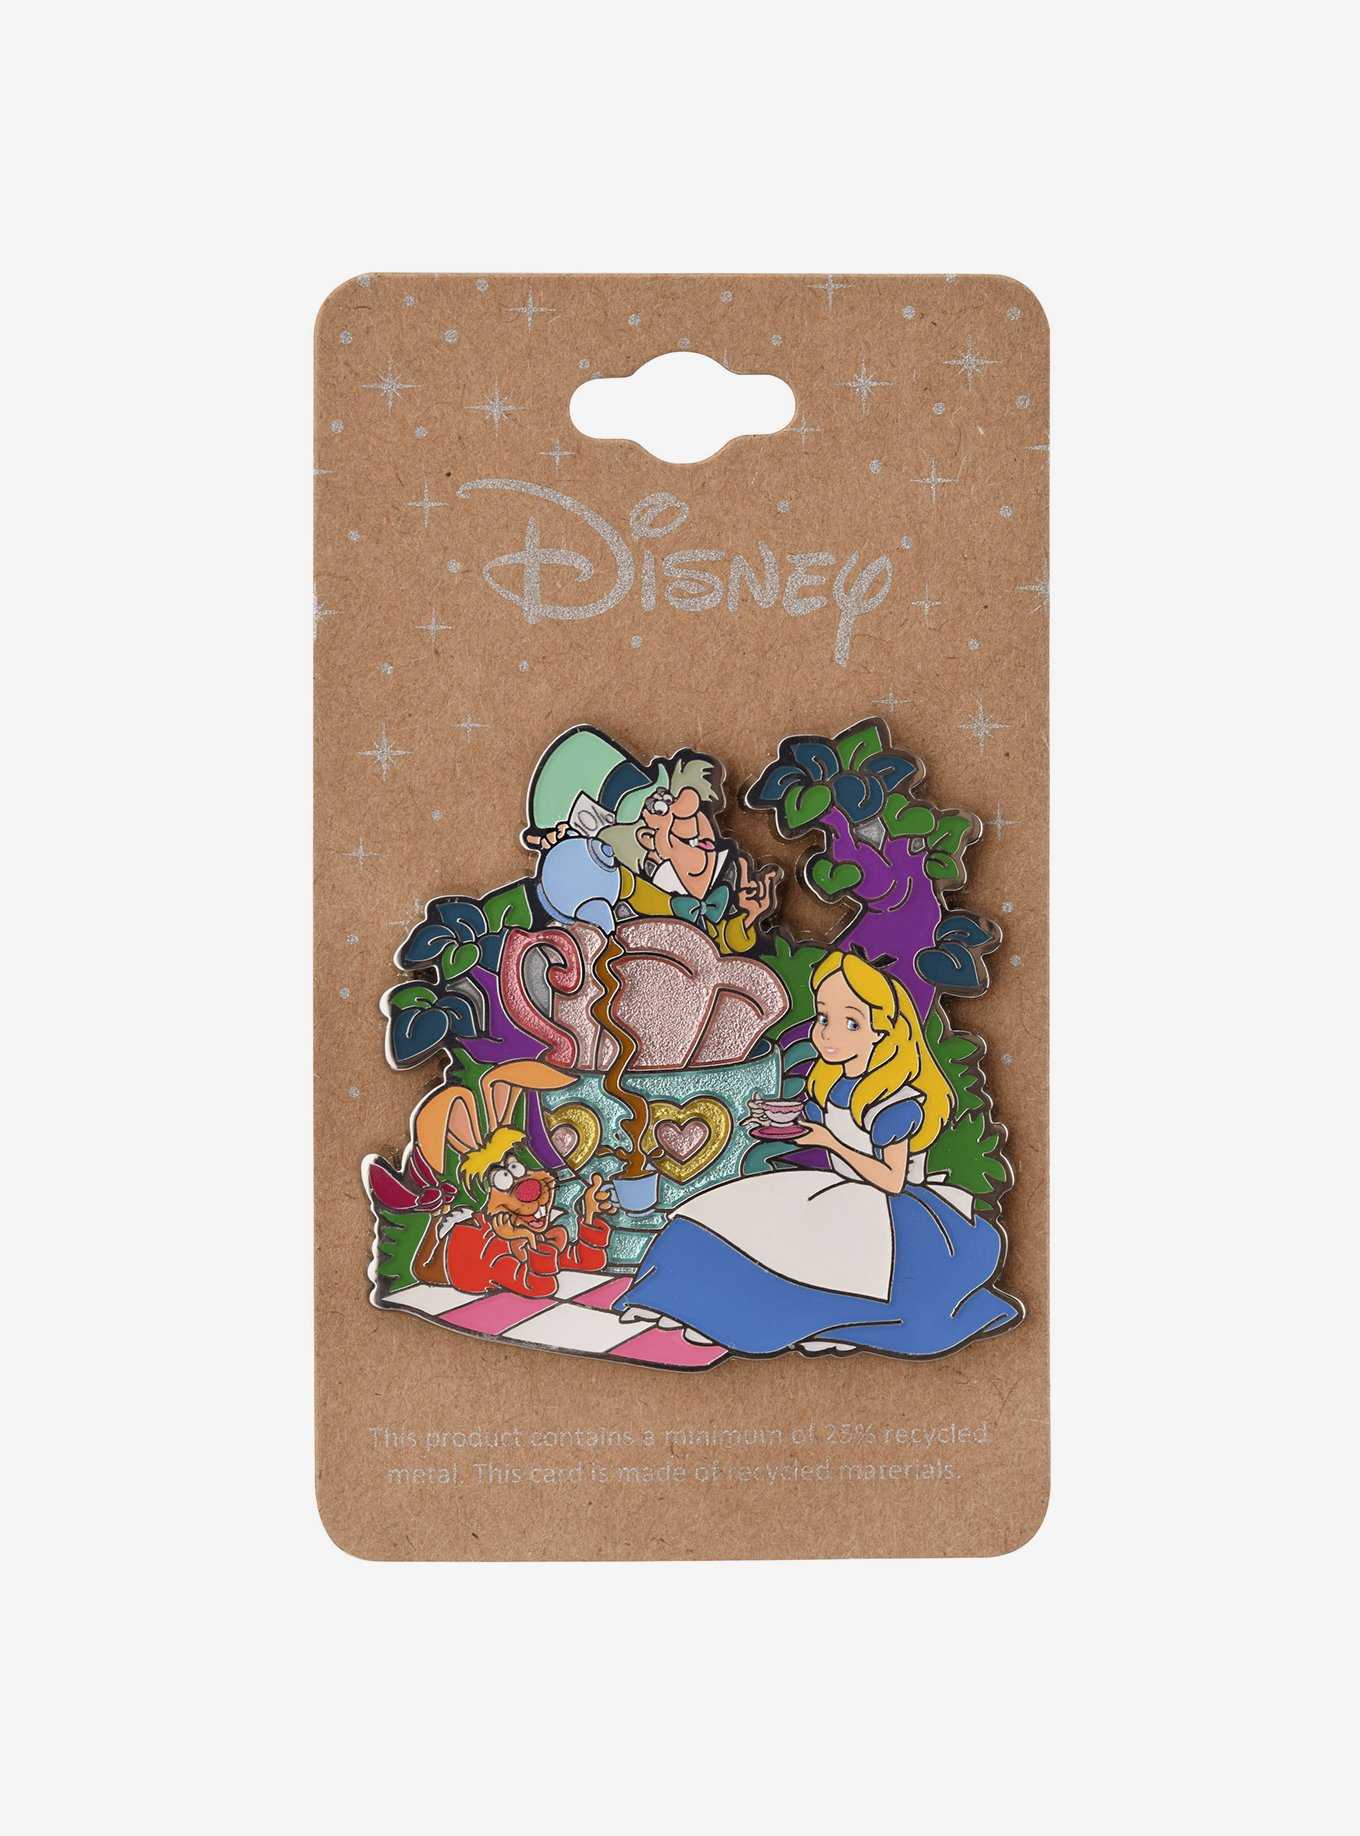 Disney Alice in Wonderland Alice Tea Party Enamel Pin — BoxLunch Exclusive, , hi-res